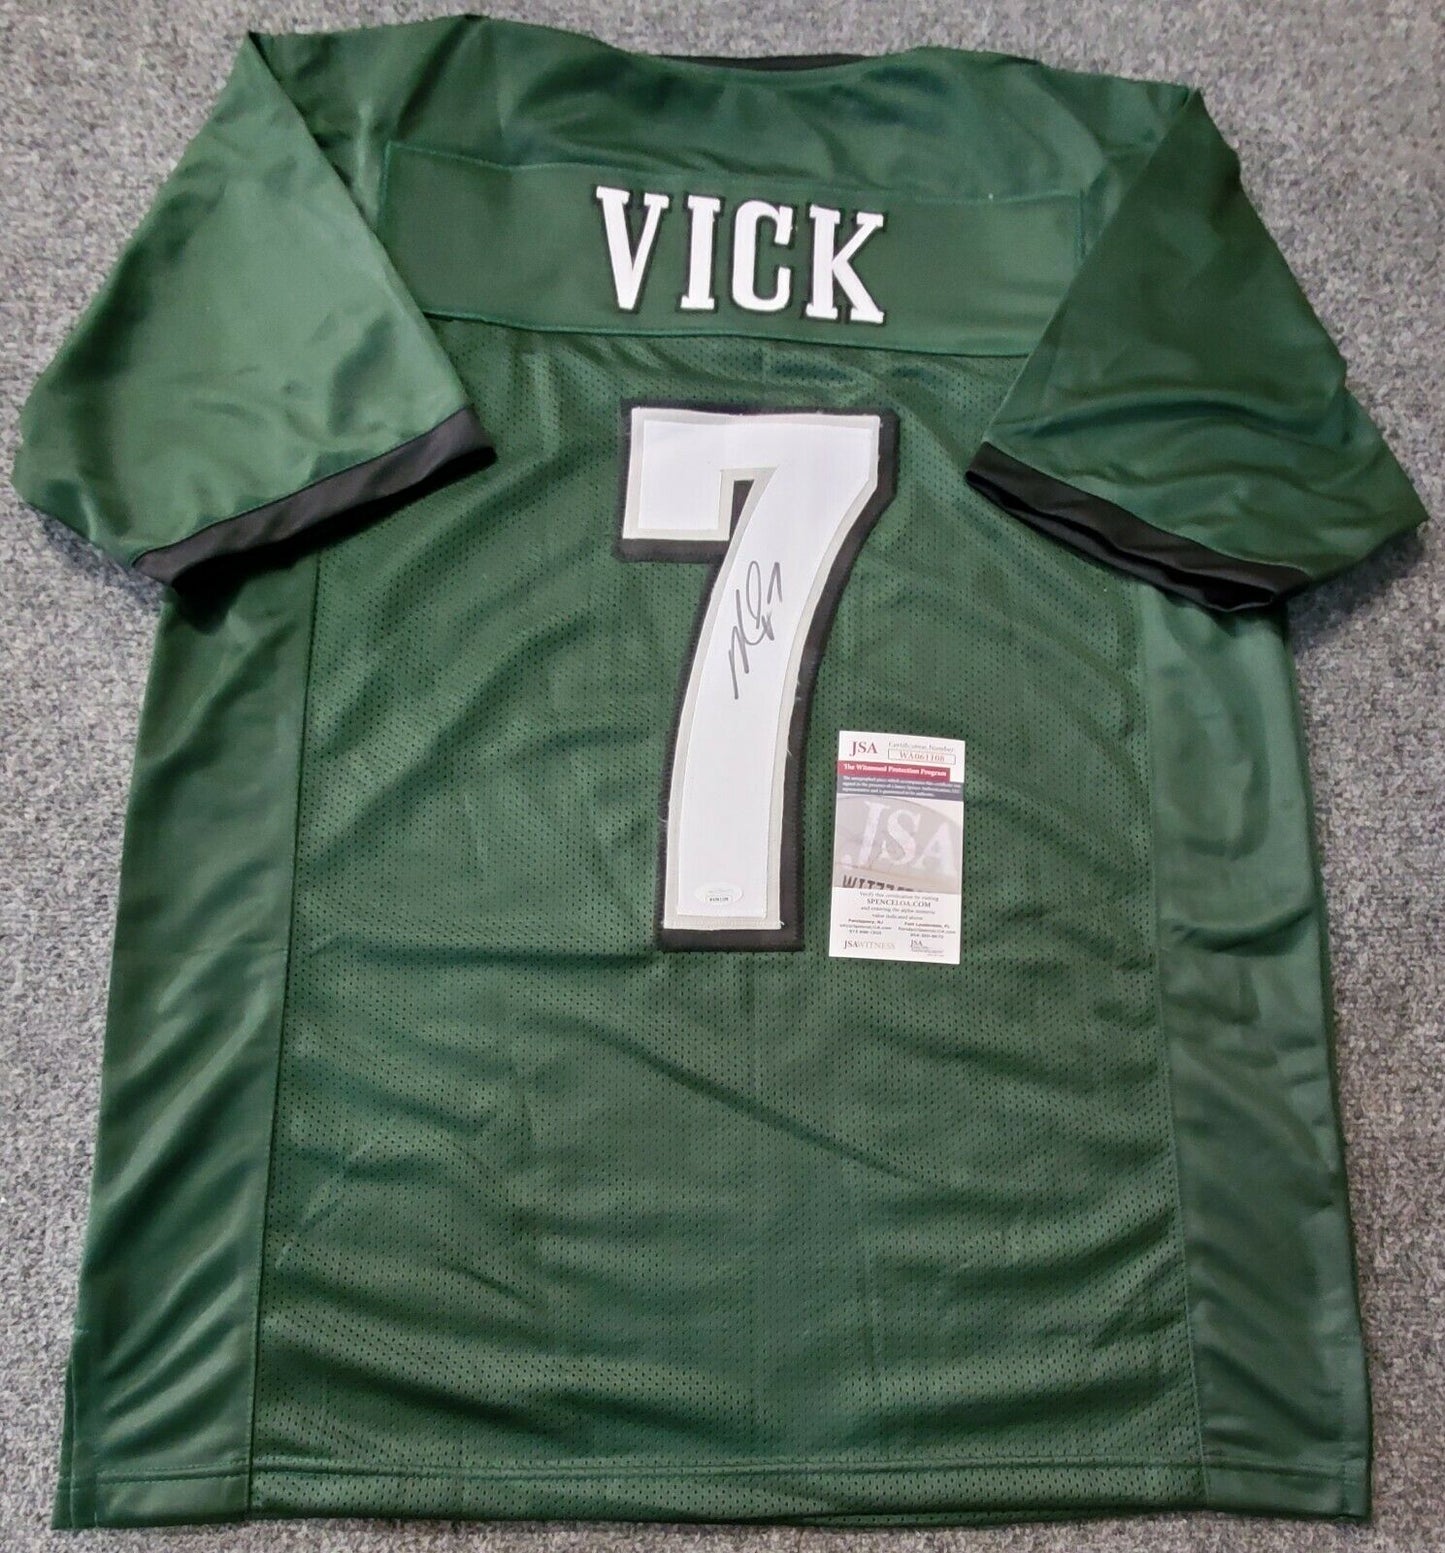 At Auction: Michael Vick Autographed Eagles Jersey - JSA